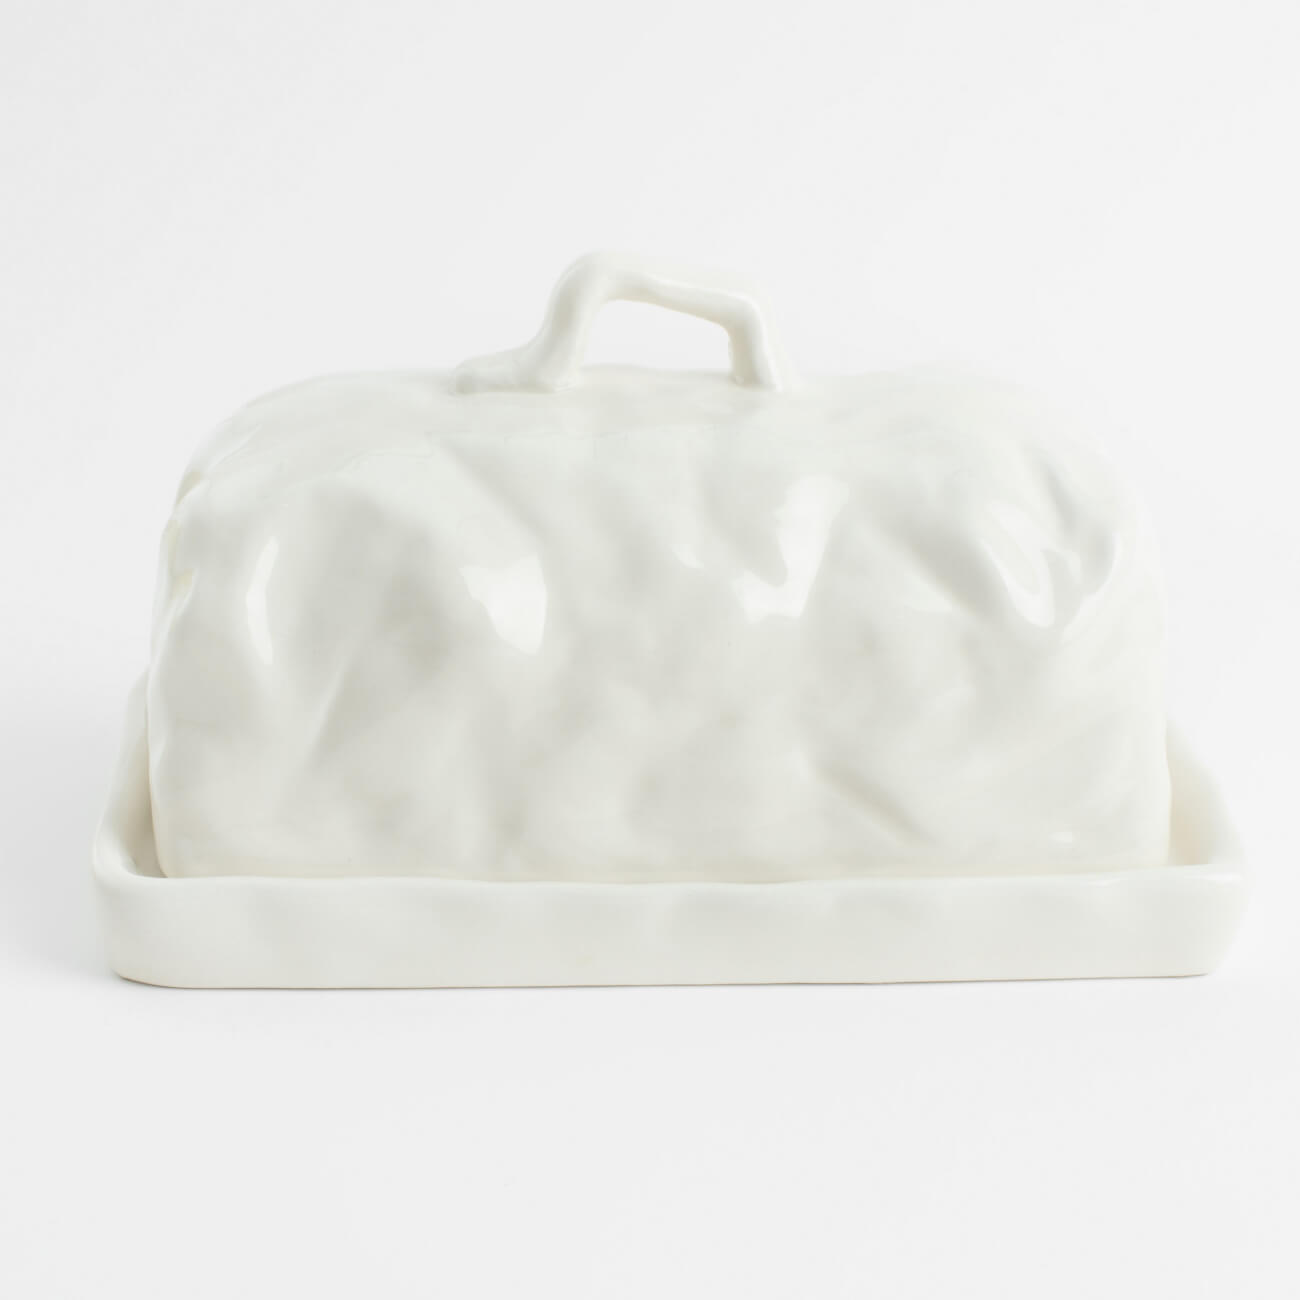 Масленка, 18 см, керамика, прямоугольная, молочная, Мятый эффект, Crumple изображение № 1